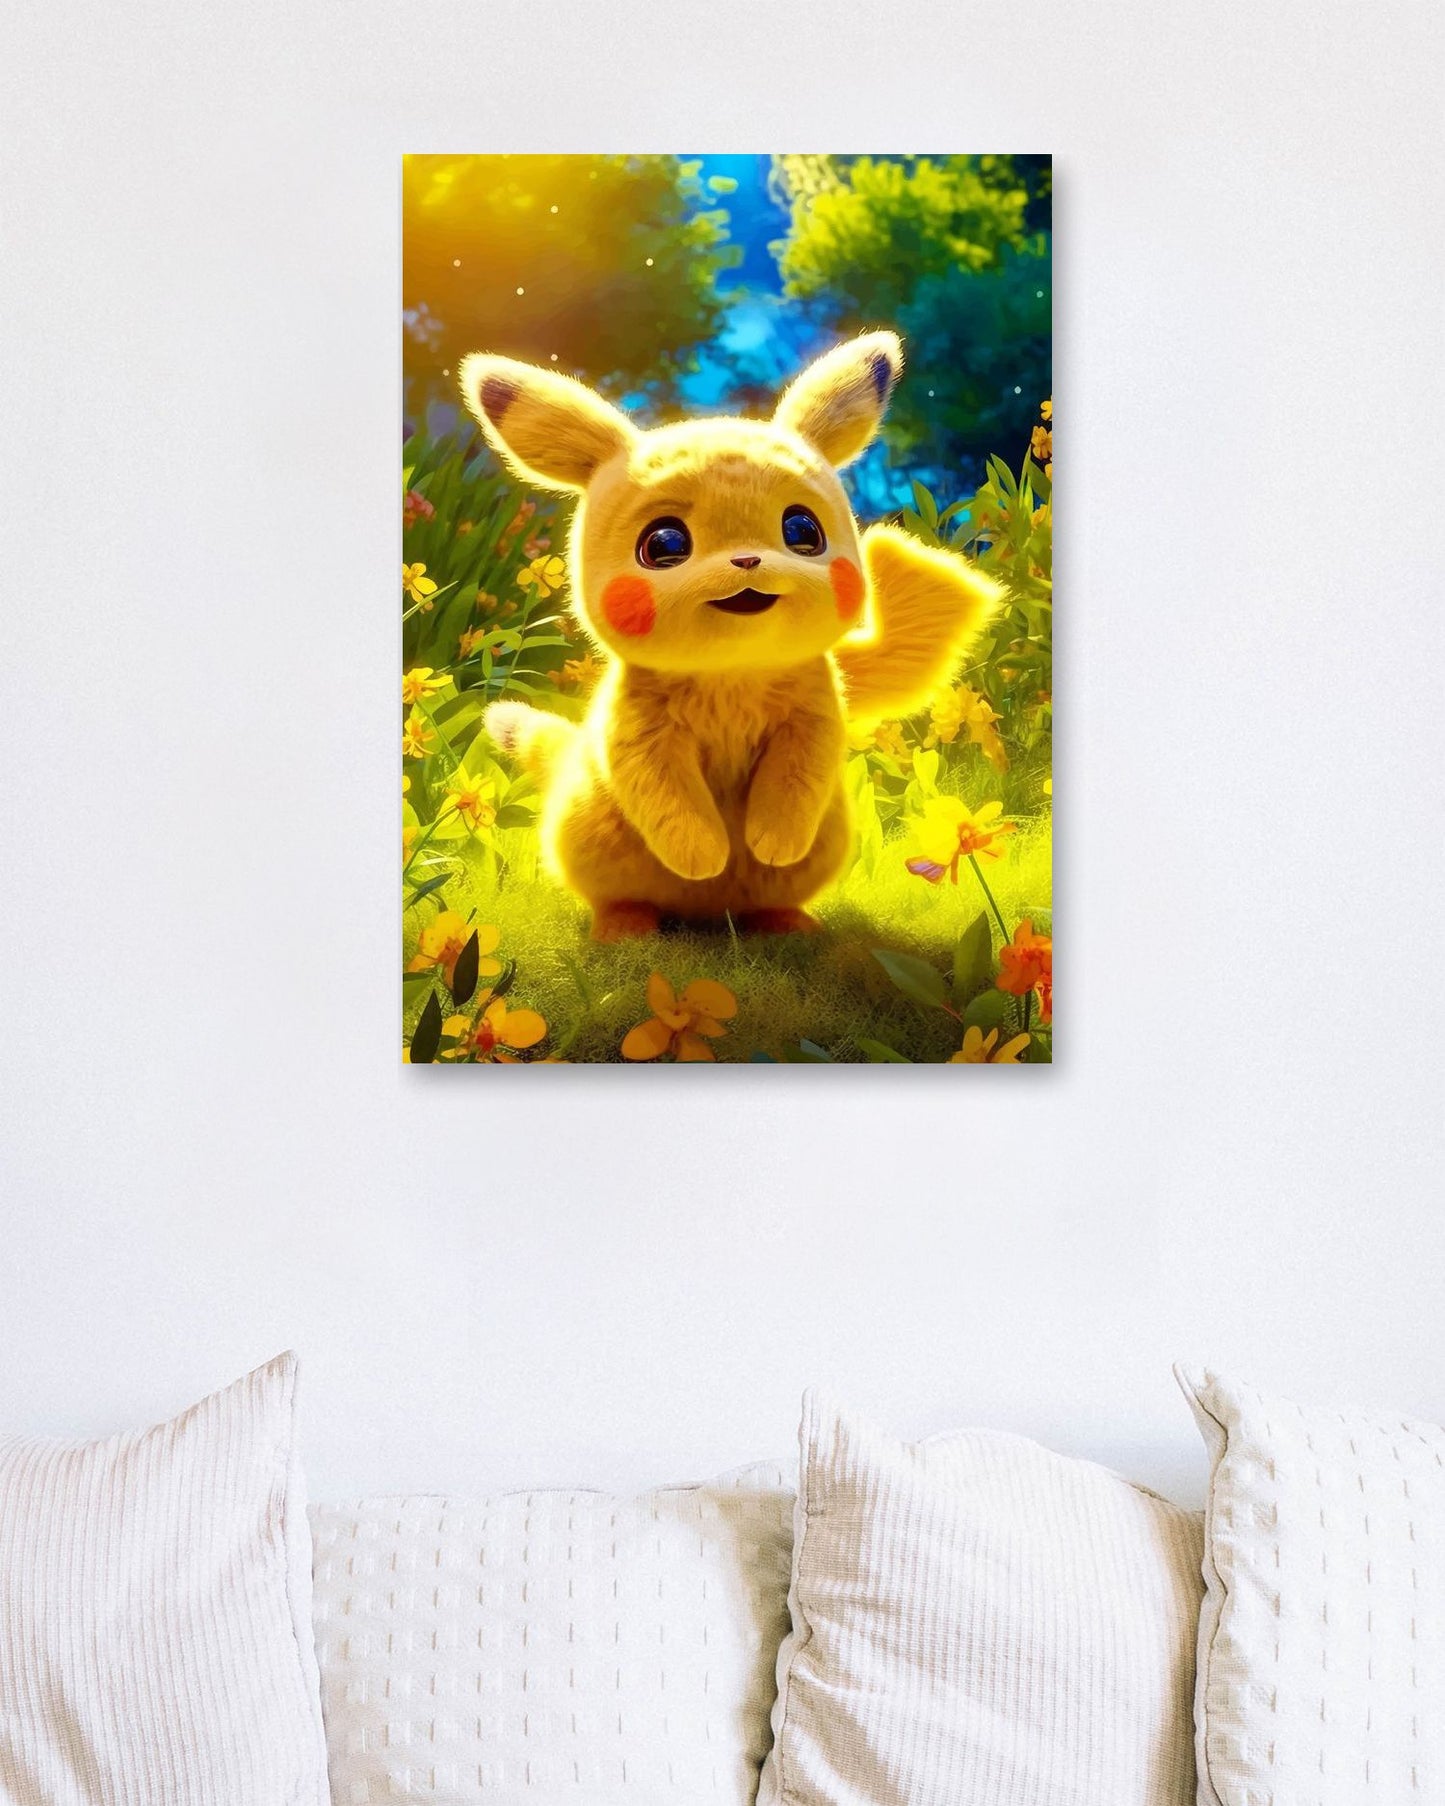 Pikachu - @Nolansummer